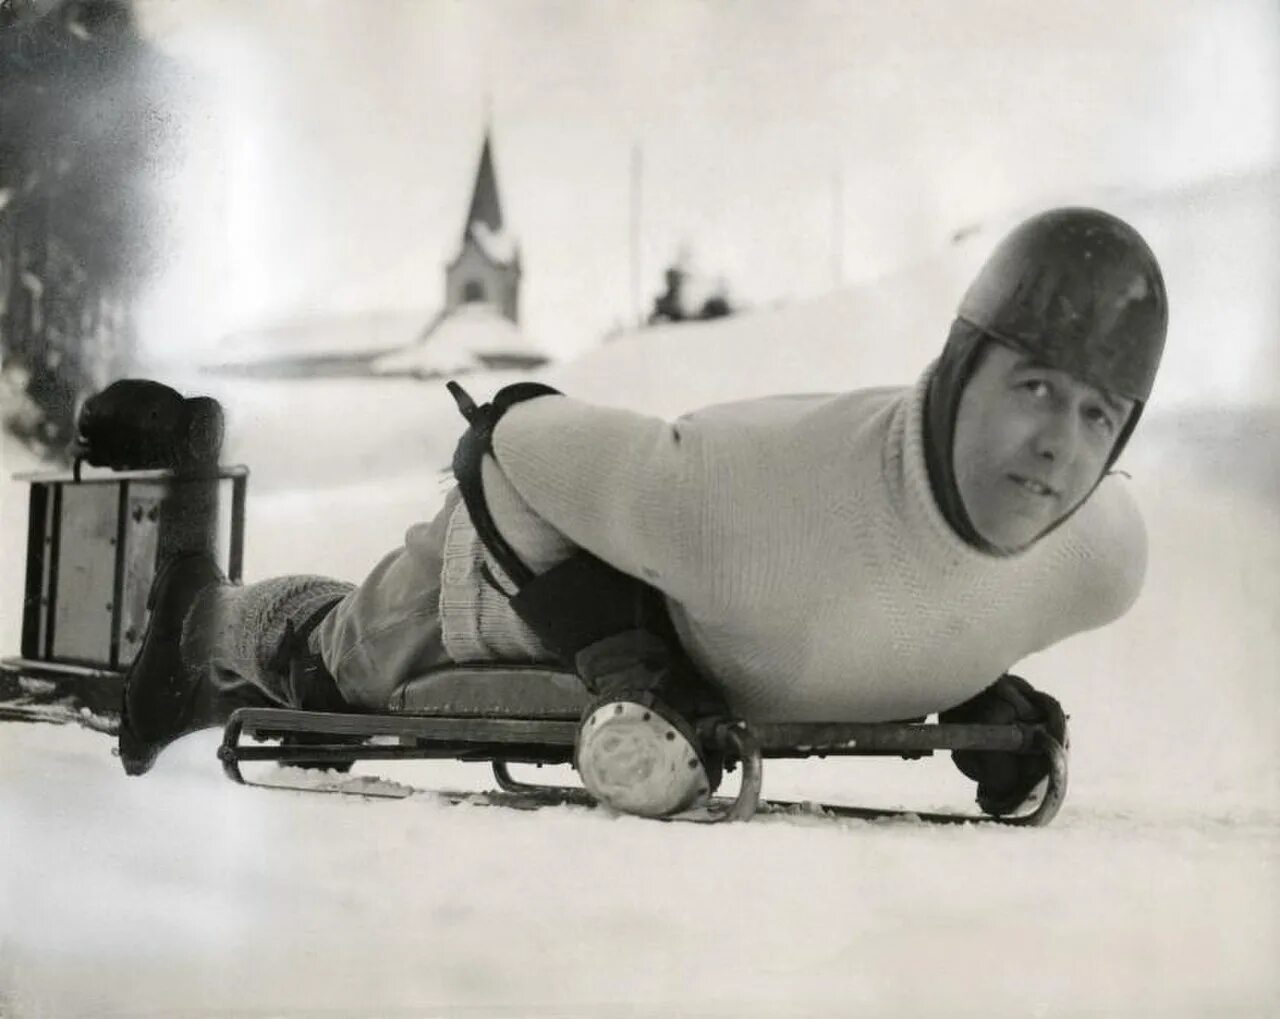 Зимние олимпийские игры 1928 года. Дженнисон Хитон скелетон. Скелетон спорт в 1928. Уилсон Смит Бобслей. Бобслей вид спорта 1948.